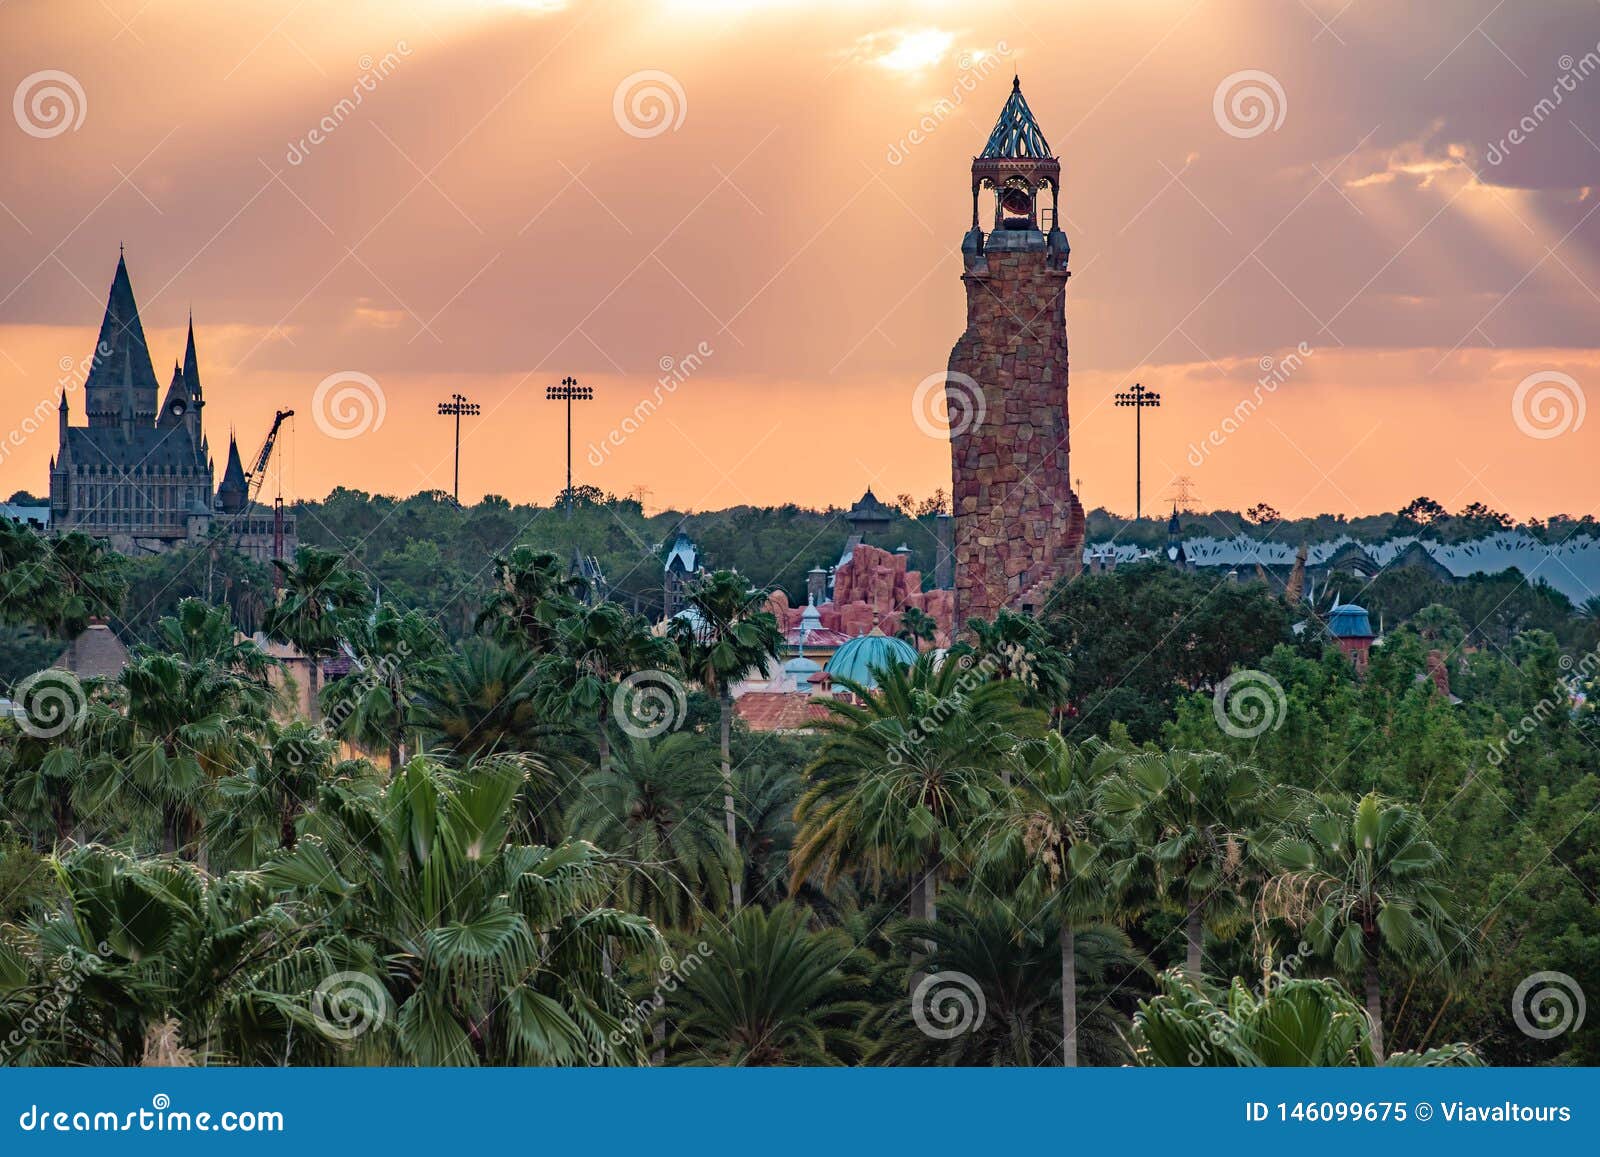 Khám phá cảnh chính của Lâu đài Hogwarts và hòn đảo Adventure Lighthouse với hình ảnh độc đáo và tuyệt đẹp. Hãy chiêm ngưỡng bức tranh hoàn hảo về thế giới phù thủy trong loạt ảnh được chụp tại Universal Studios Florida. Đừng bỏ lỡ cơ hội thưởng thức hình ảnh đẹp mắt này!